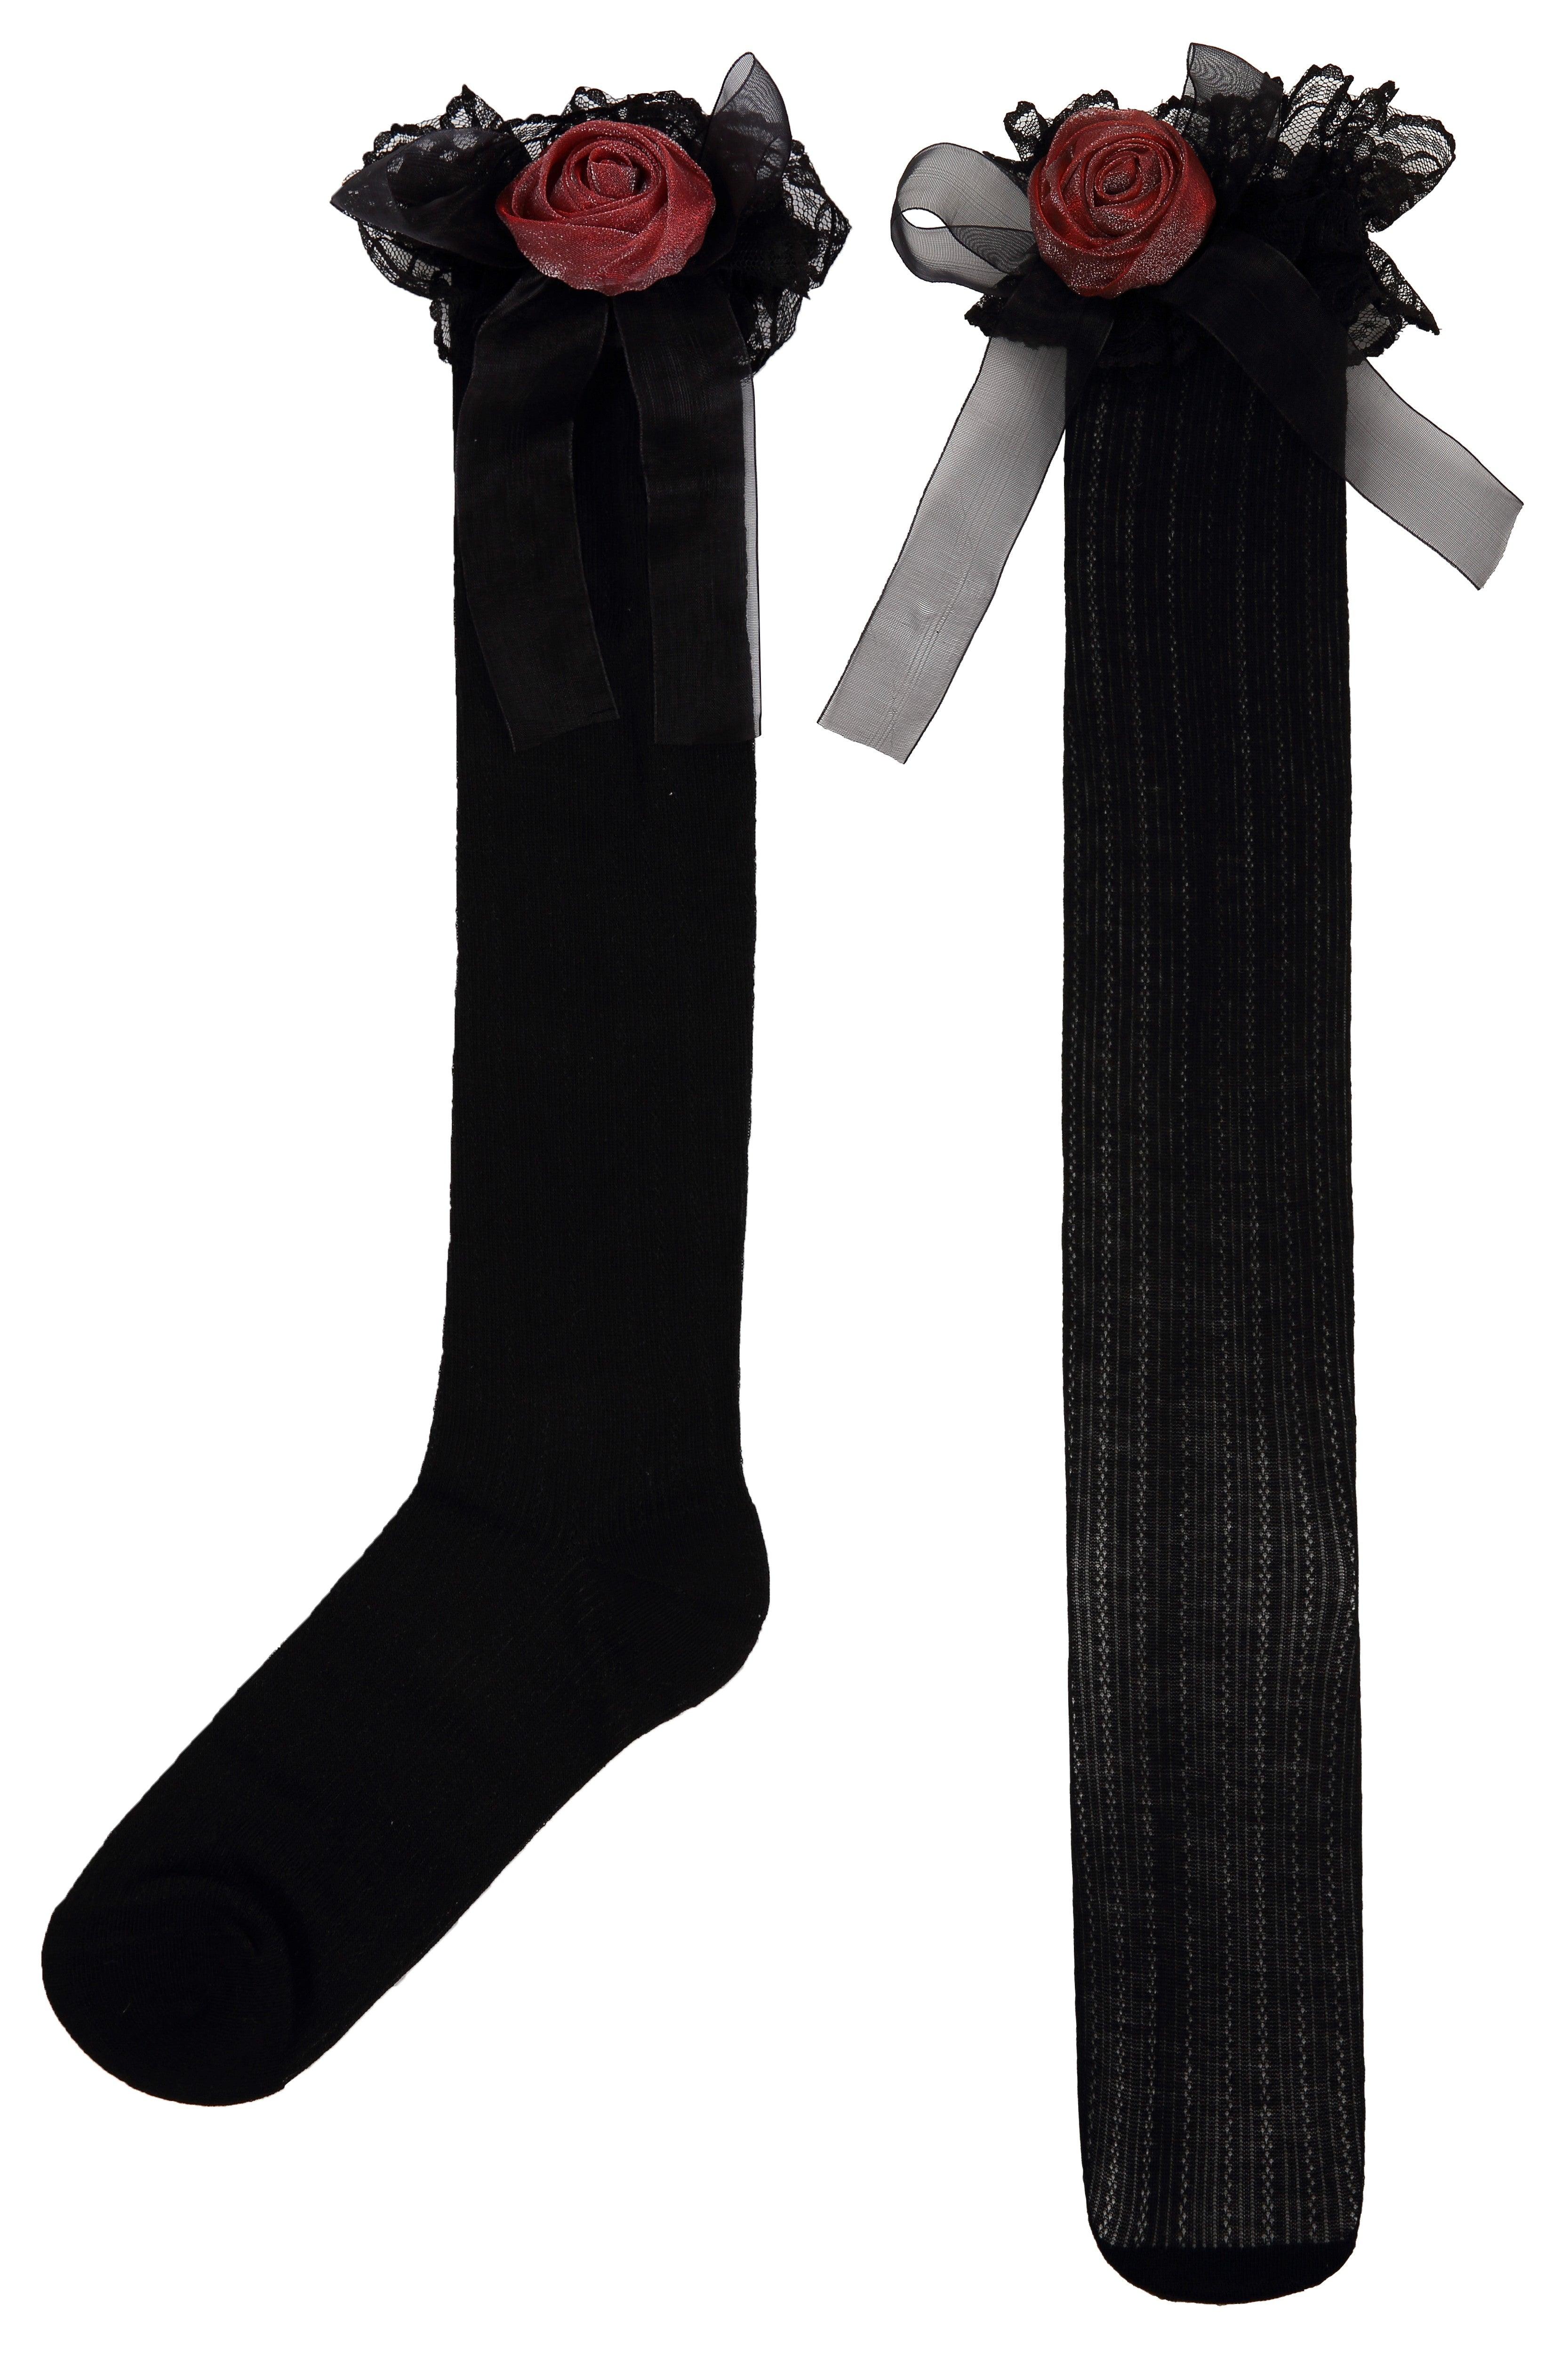 Rose Black Lace Patterned Stretch Long Socks - Uniqvibe